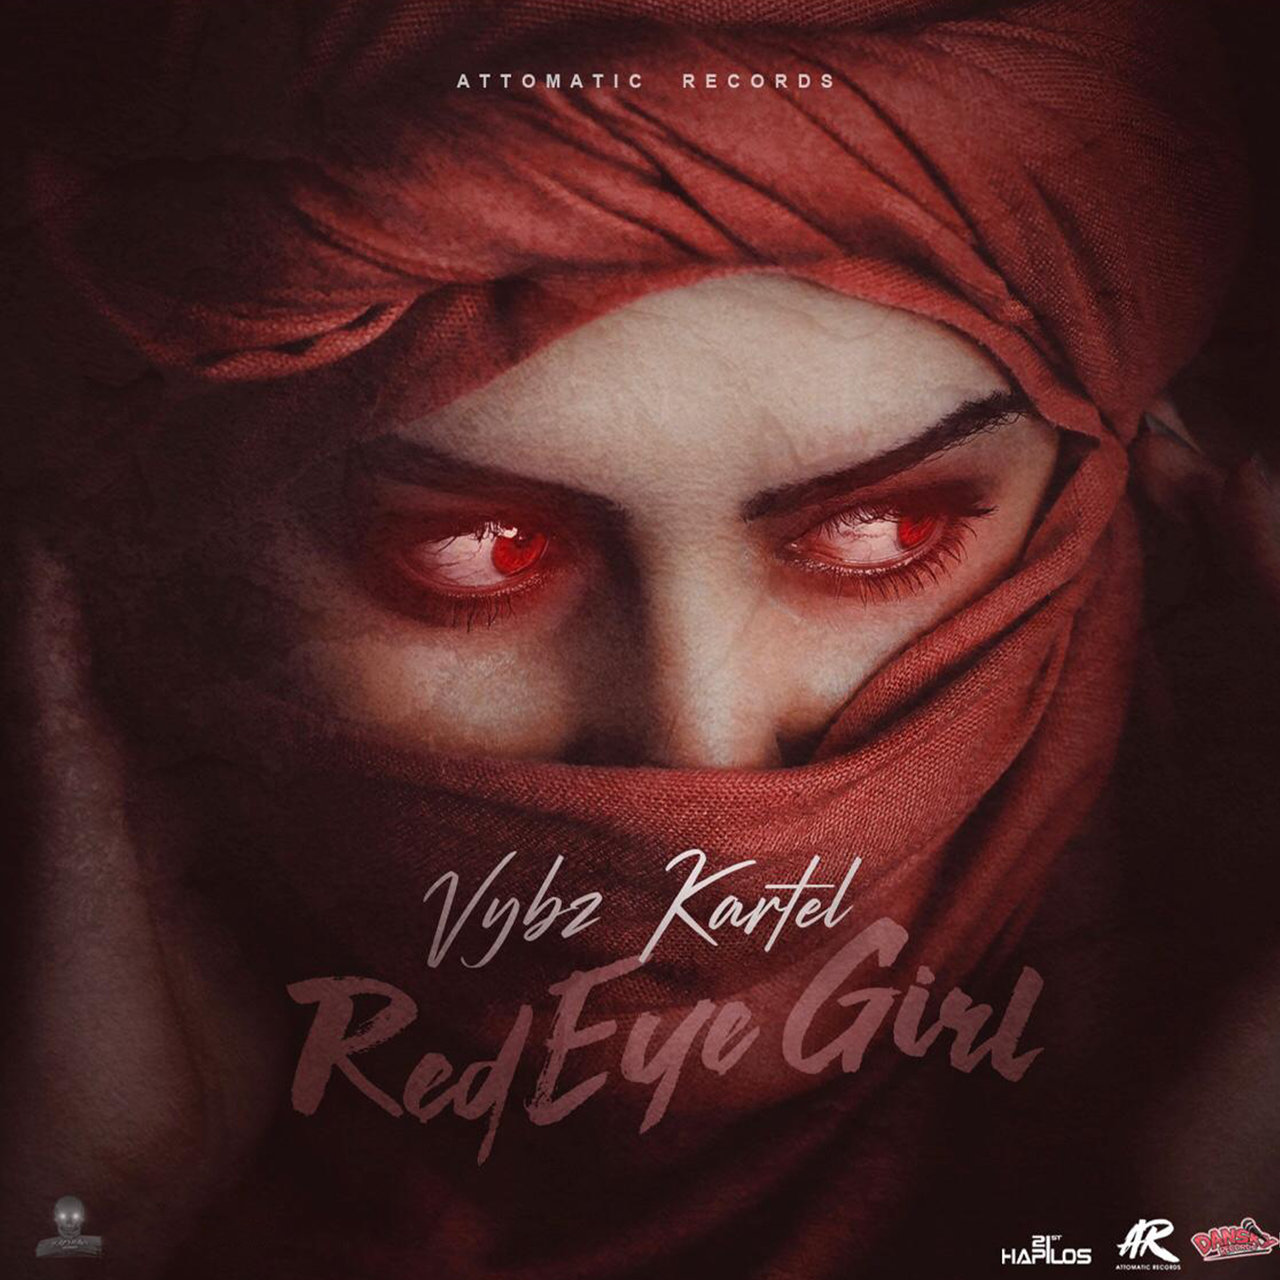 Vybz Kartel - Red Eye Girl (Cover)